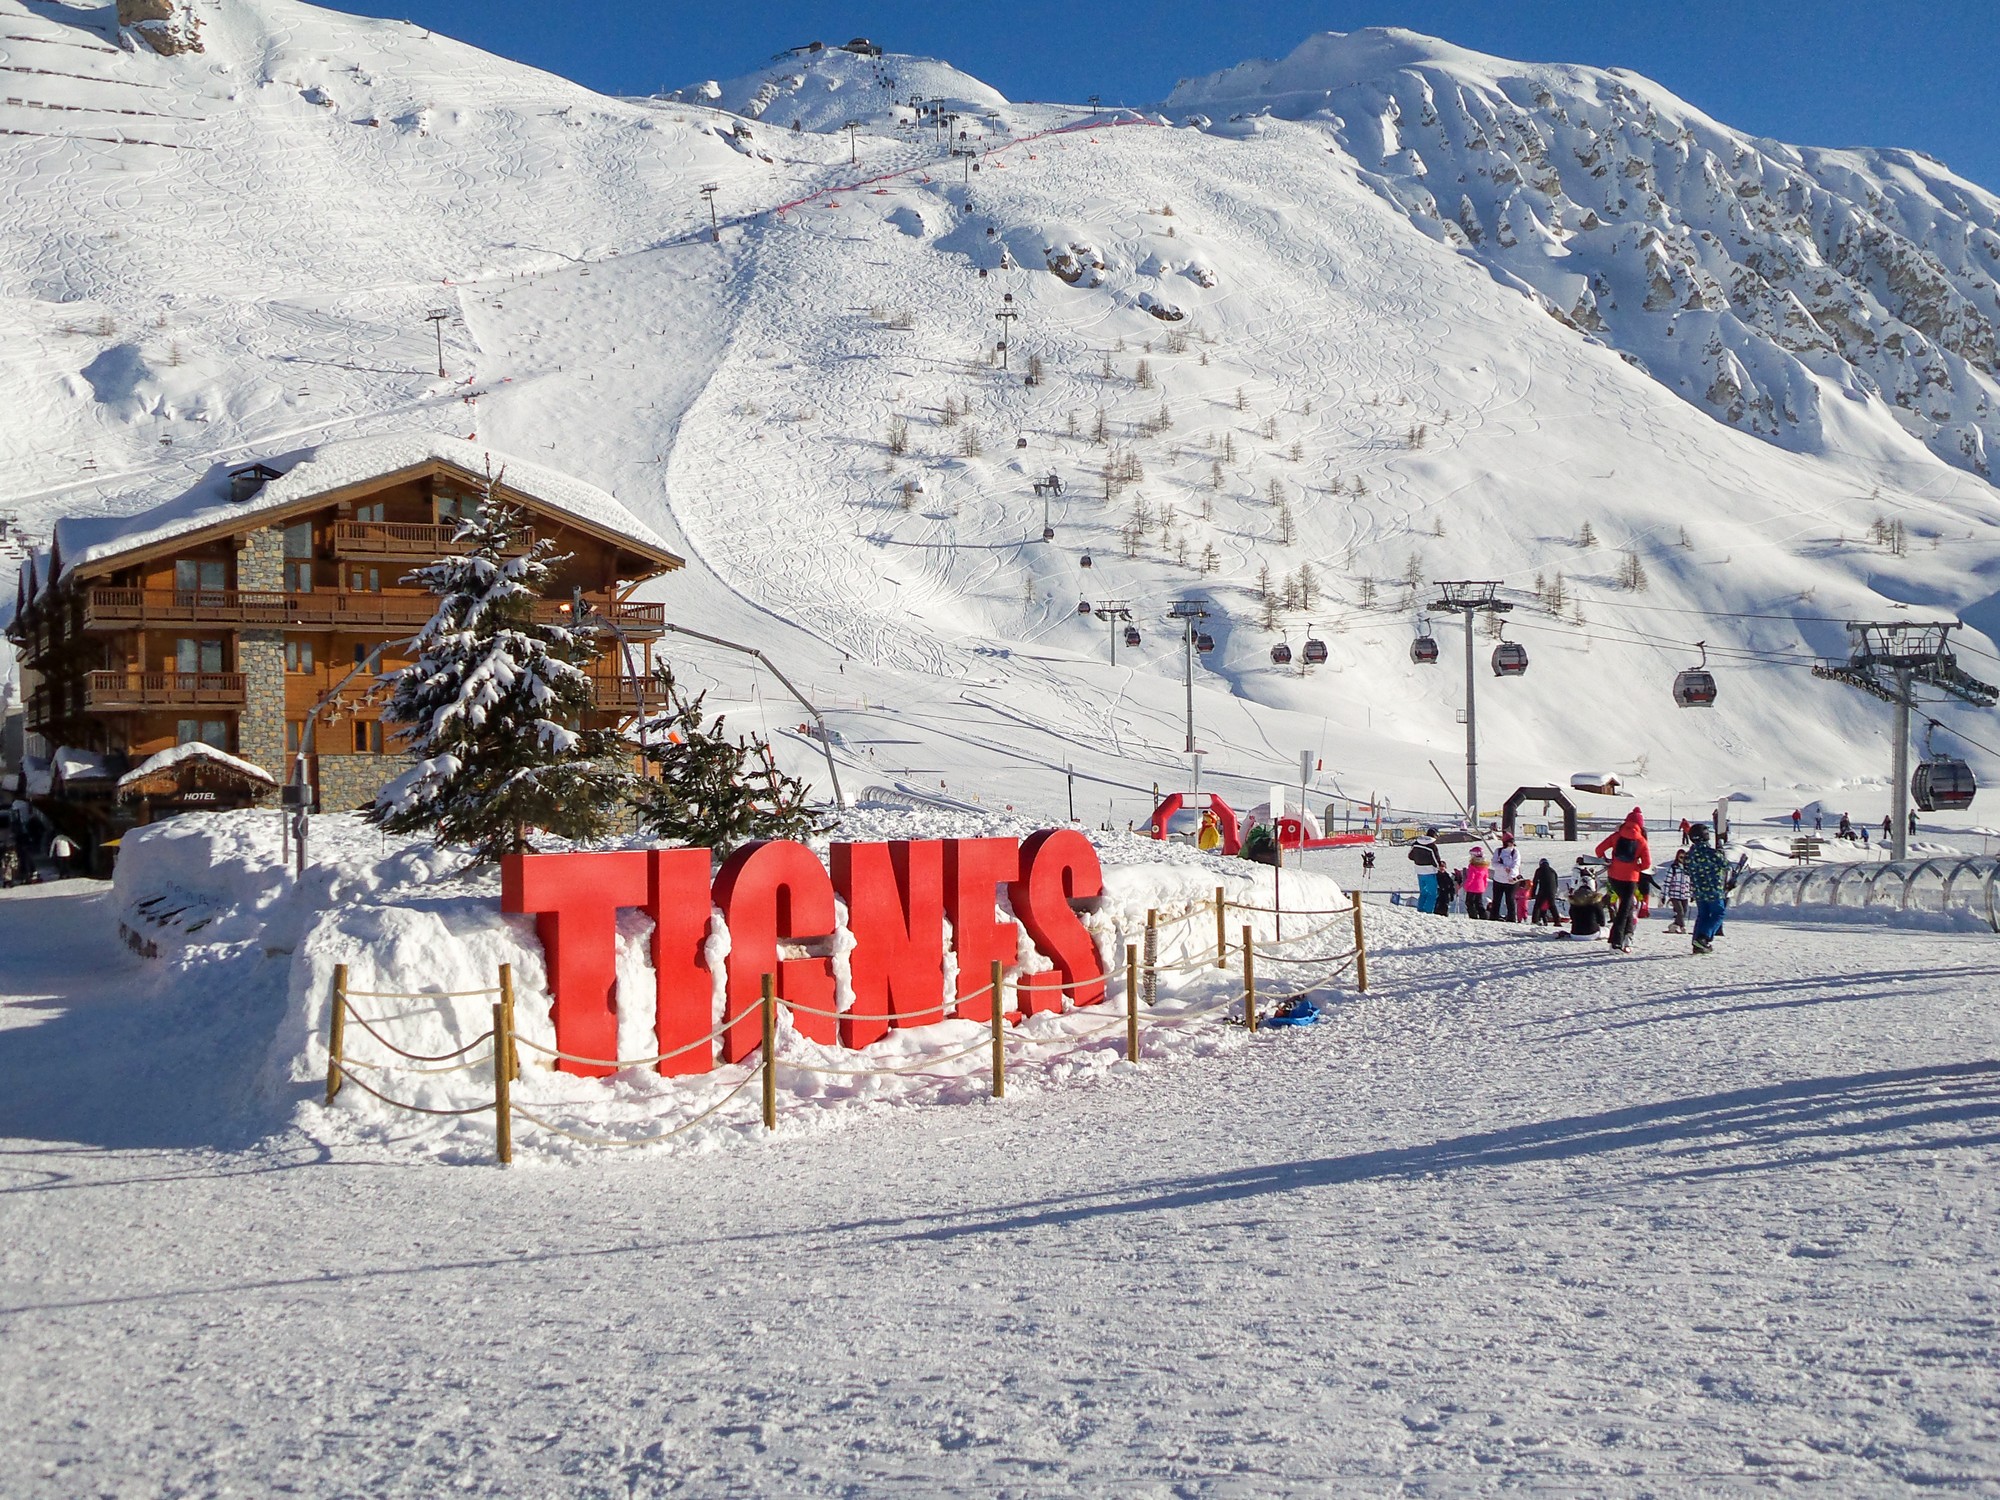 Ski station of Tignes in winter, letters Tignes